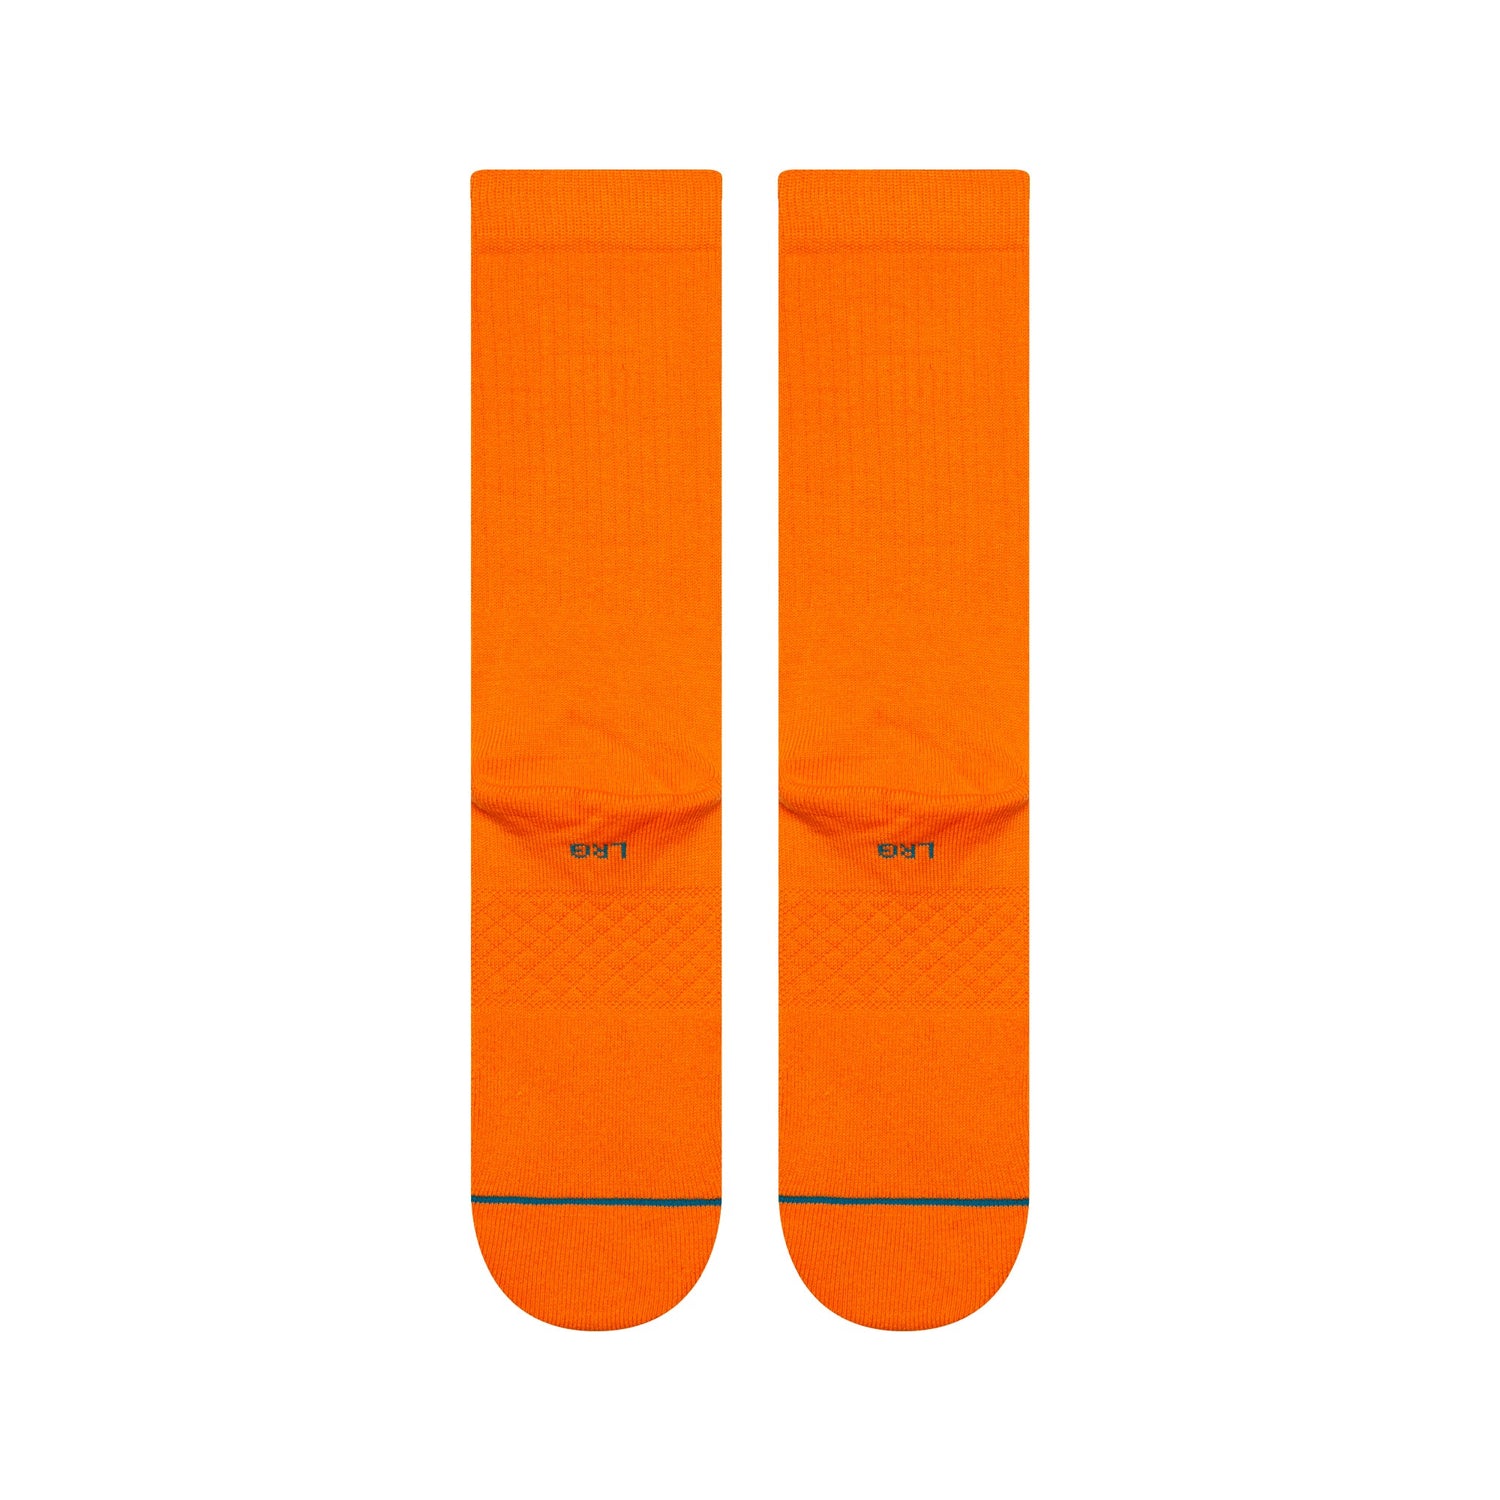 Chaussettes mi-mollet orange Icon de Stance